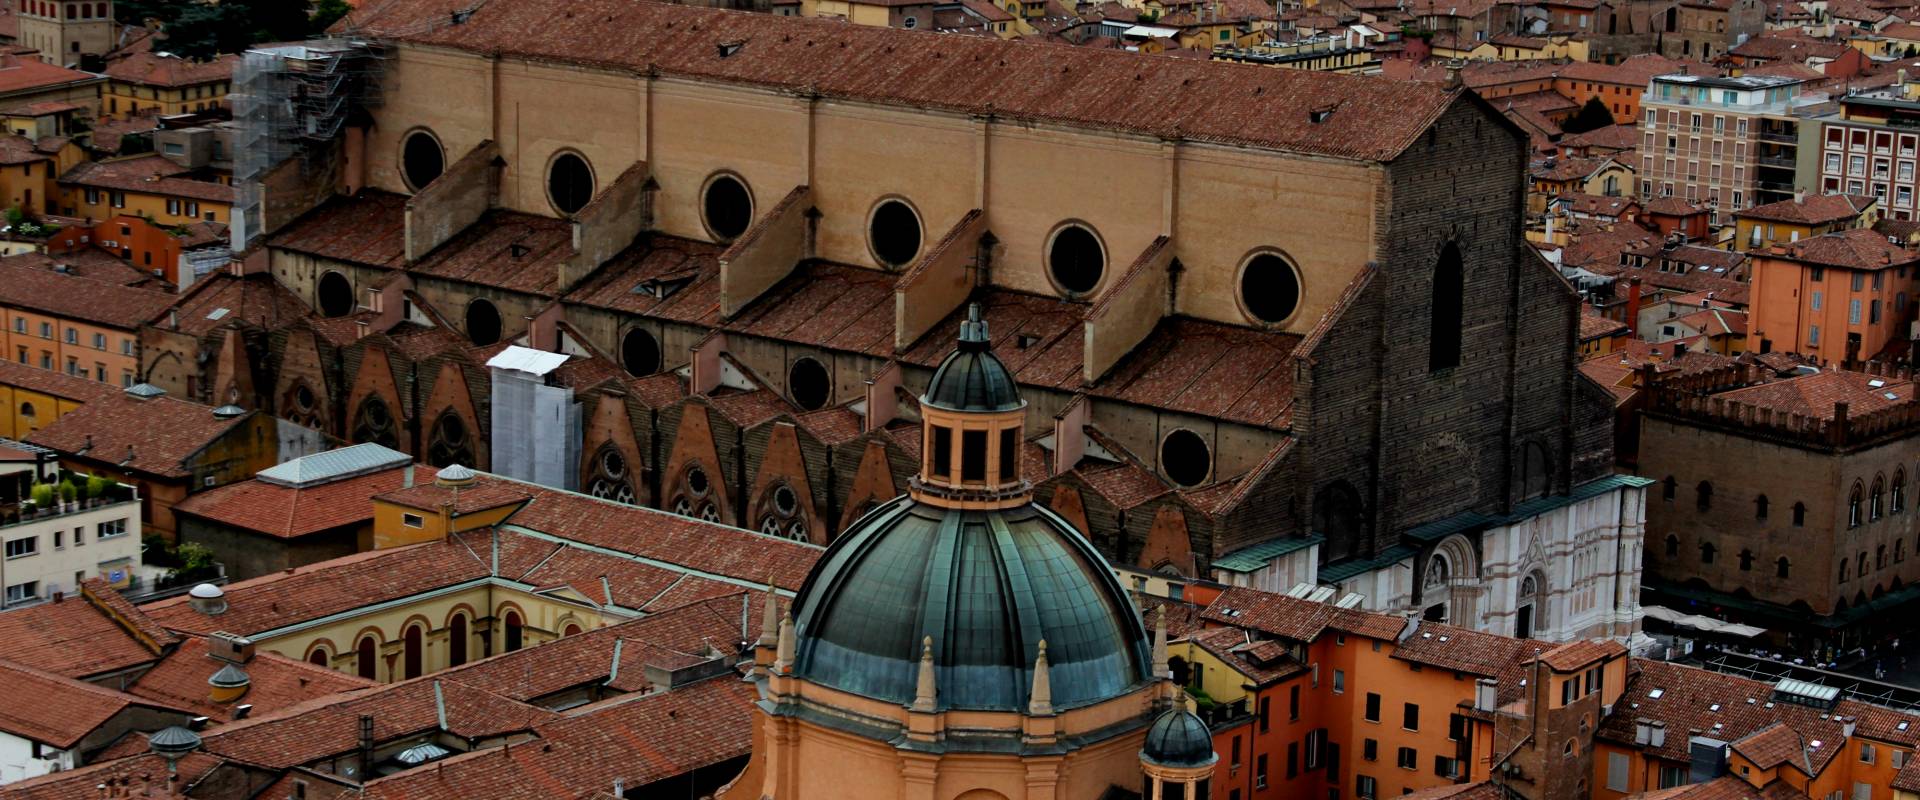 Basilica di San Petronio vista dalla torre degli Asinelli photo by Andrea Marseglia